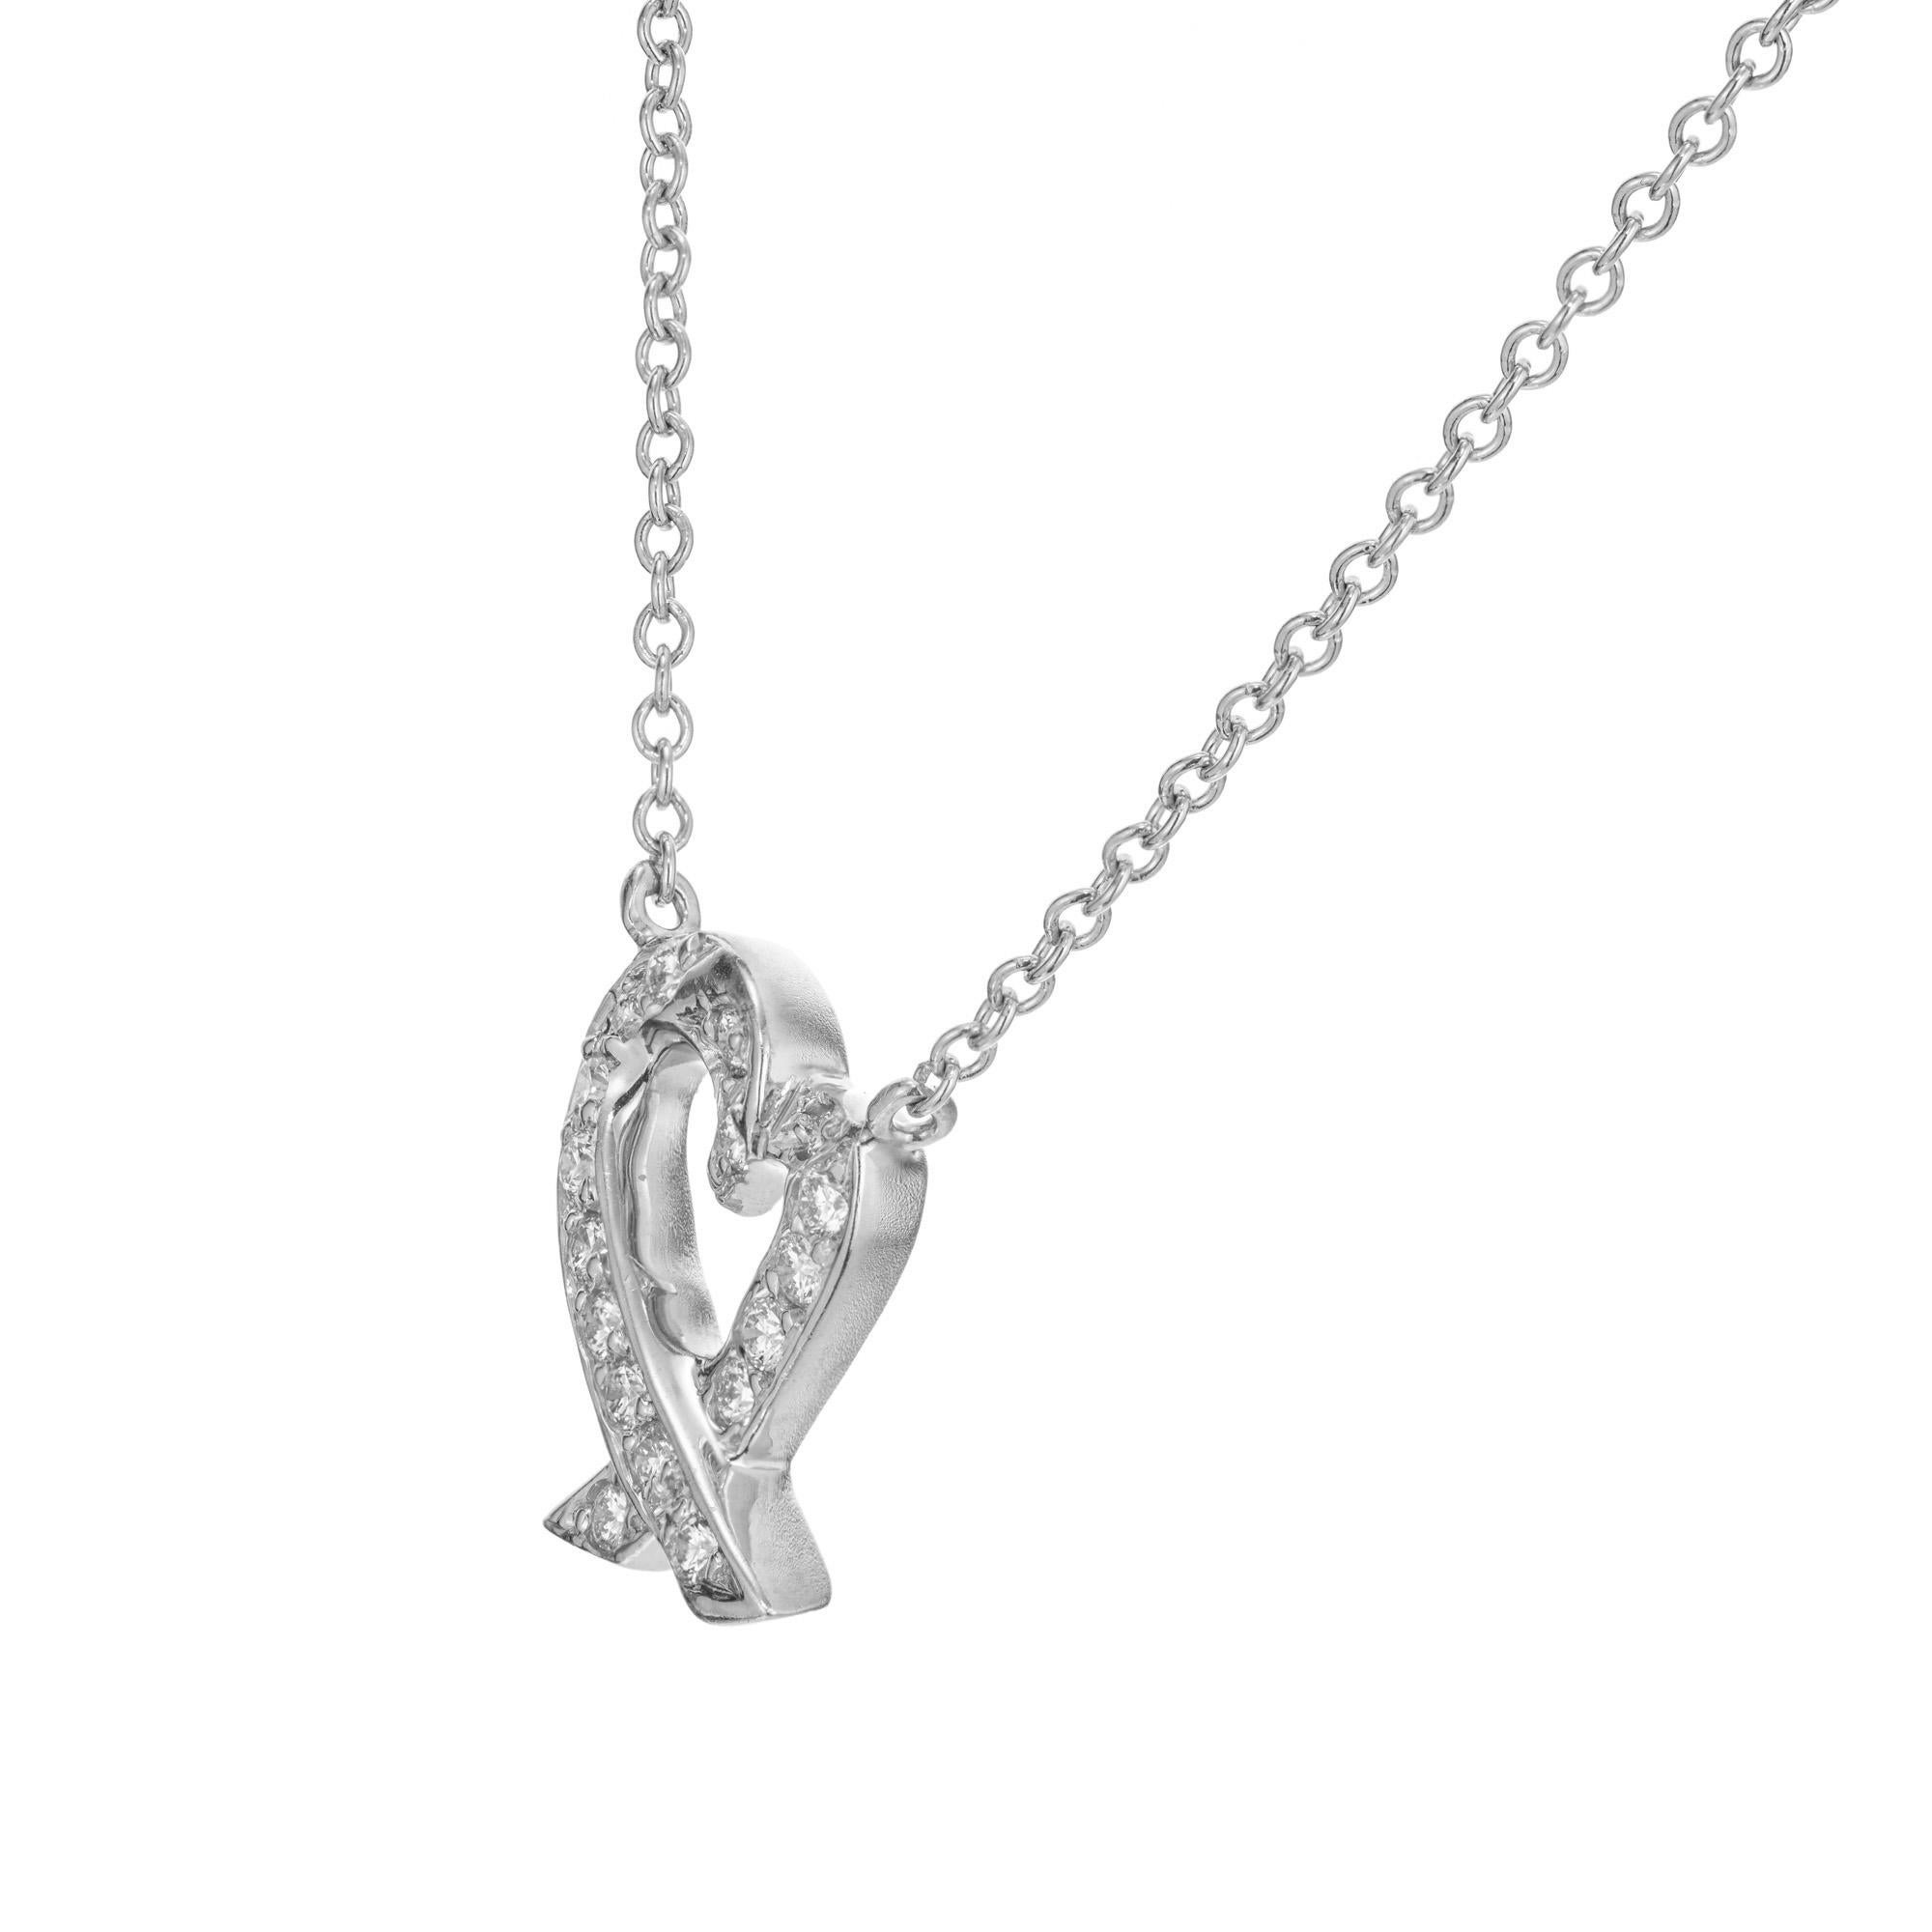 Iconic Tiffany & Co Paloma Picasso diamond heart pendant necklace. 17 round brilliant cut diamonds set in platinum. 16 inch chain. 

17 round brilliant cut diamonds, approx. .12cts 
Platinum 
16 inch platinum chain. 
